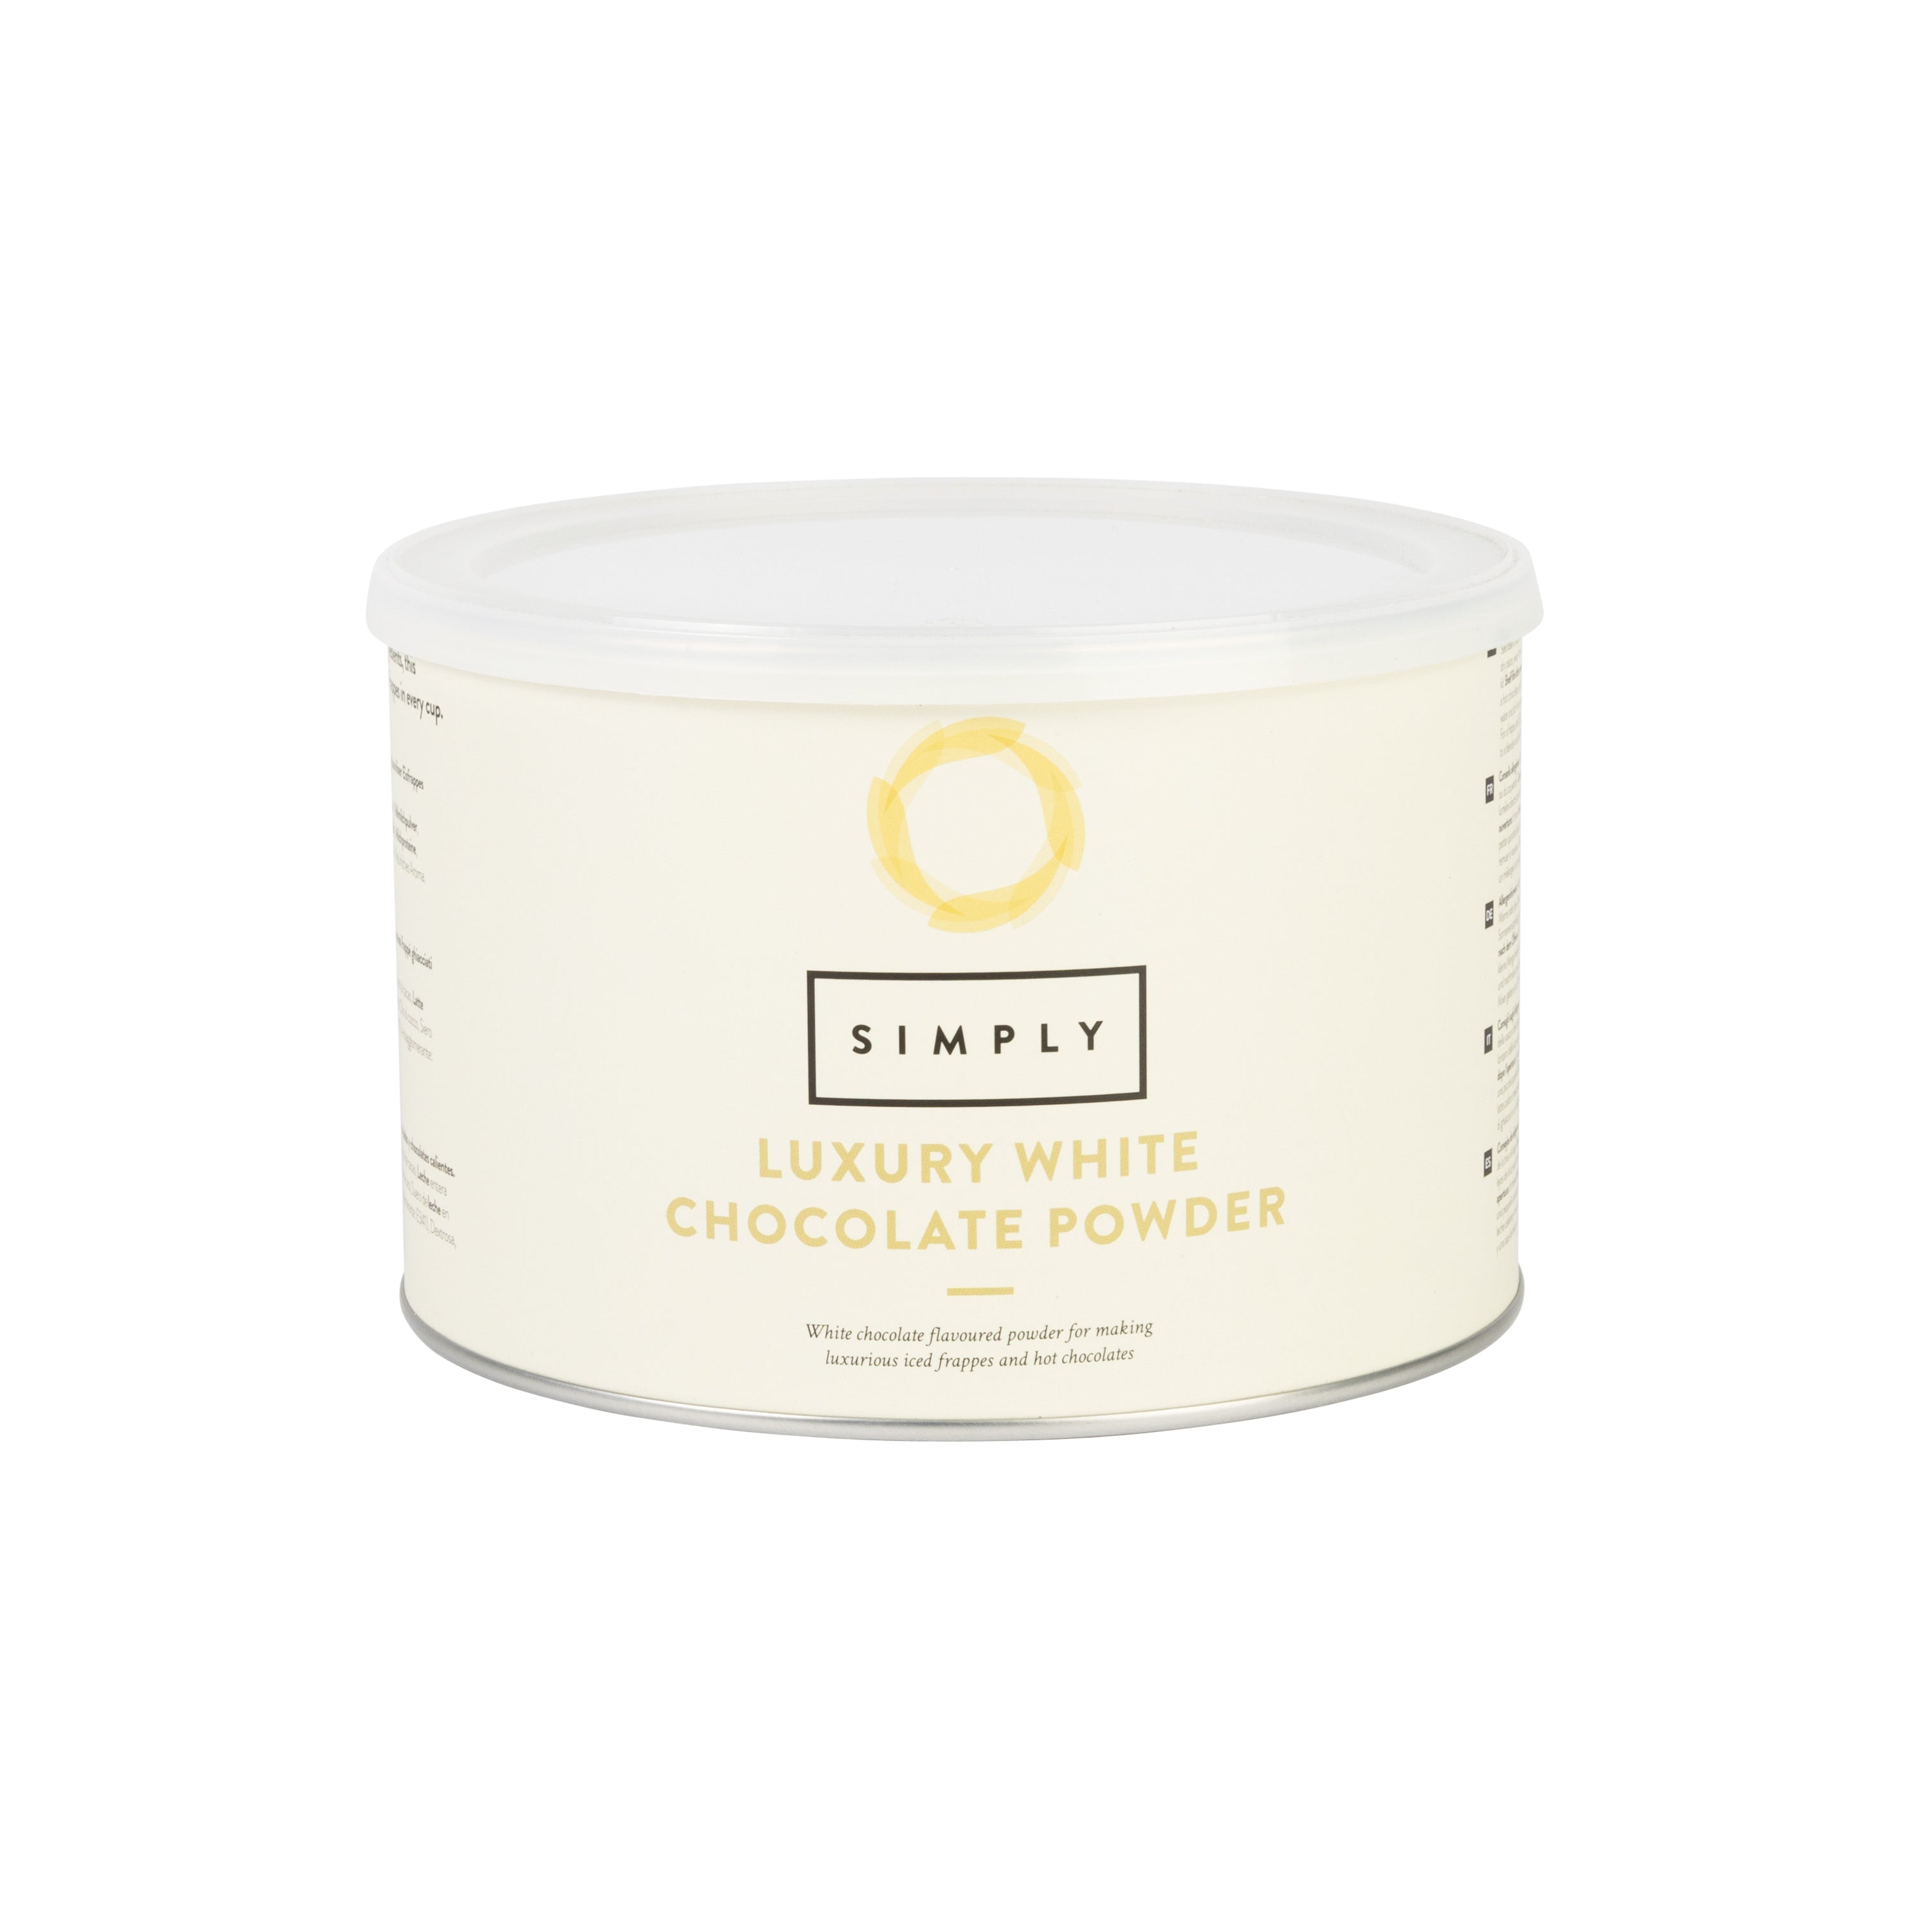 Simply Luxury White Chocolate Powder - 1kg Tin